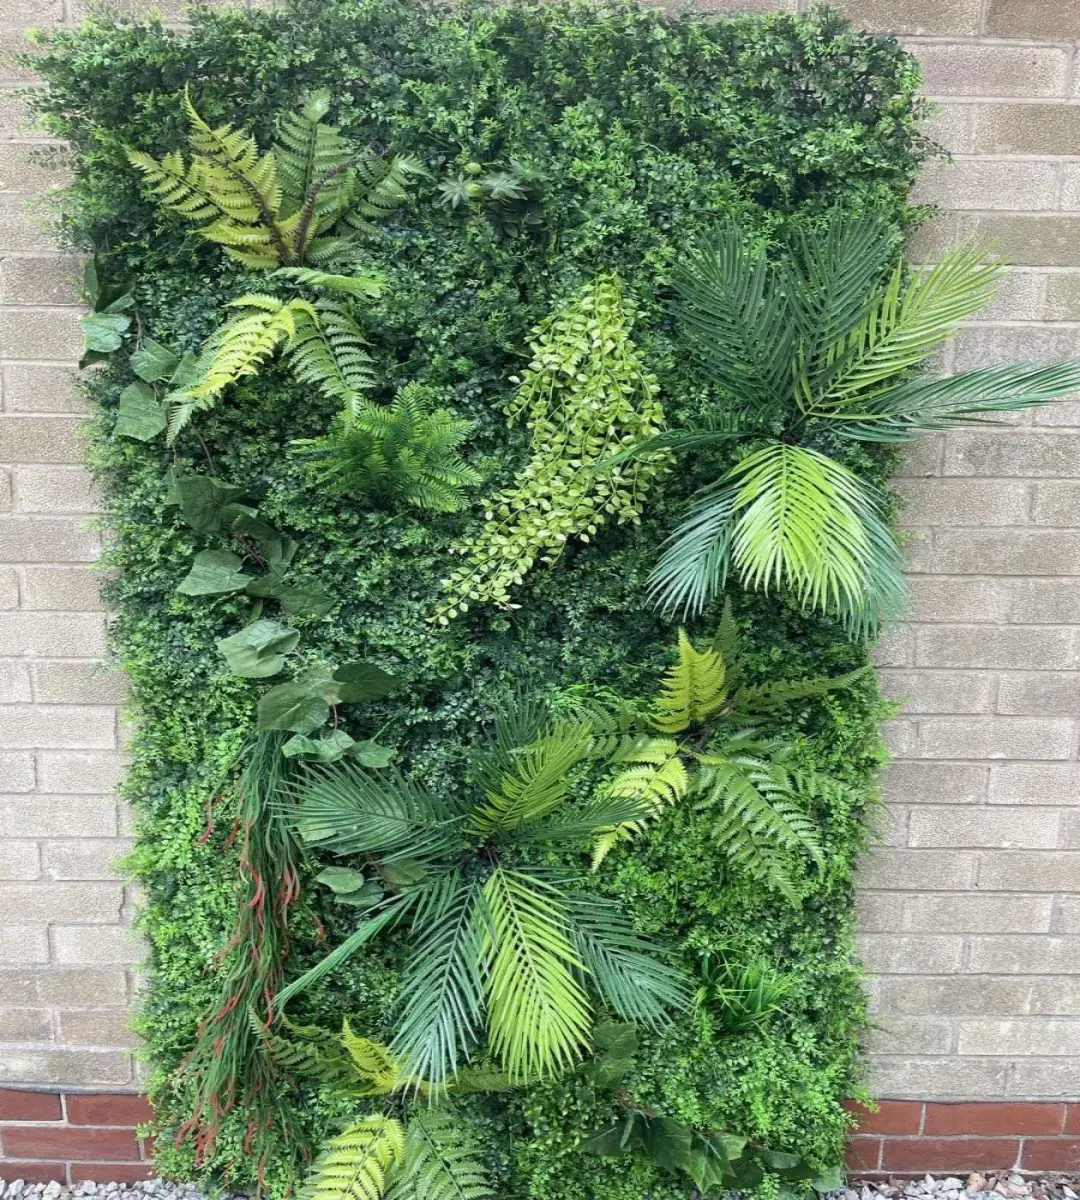 Giardino legno di bosso siepe vegetale artificiale da giardino parete verde fogliame pannello pianta erba per parete esterna finta parete piante